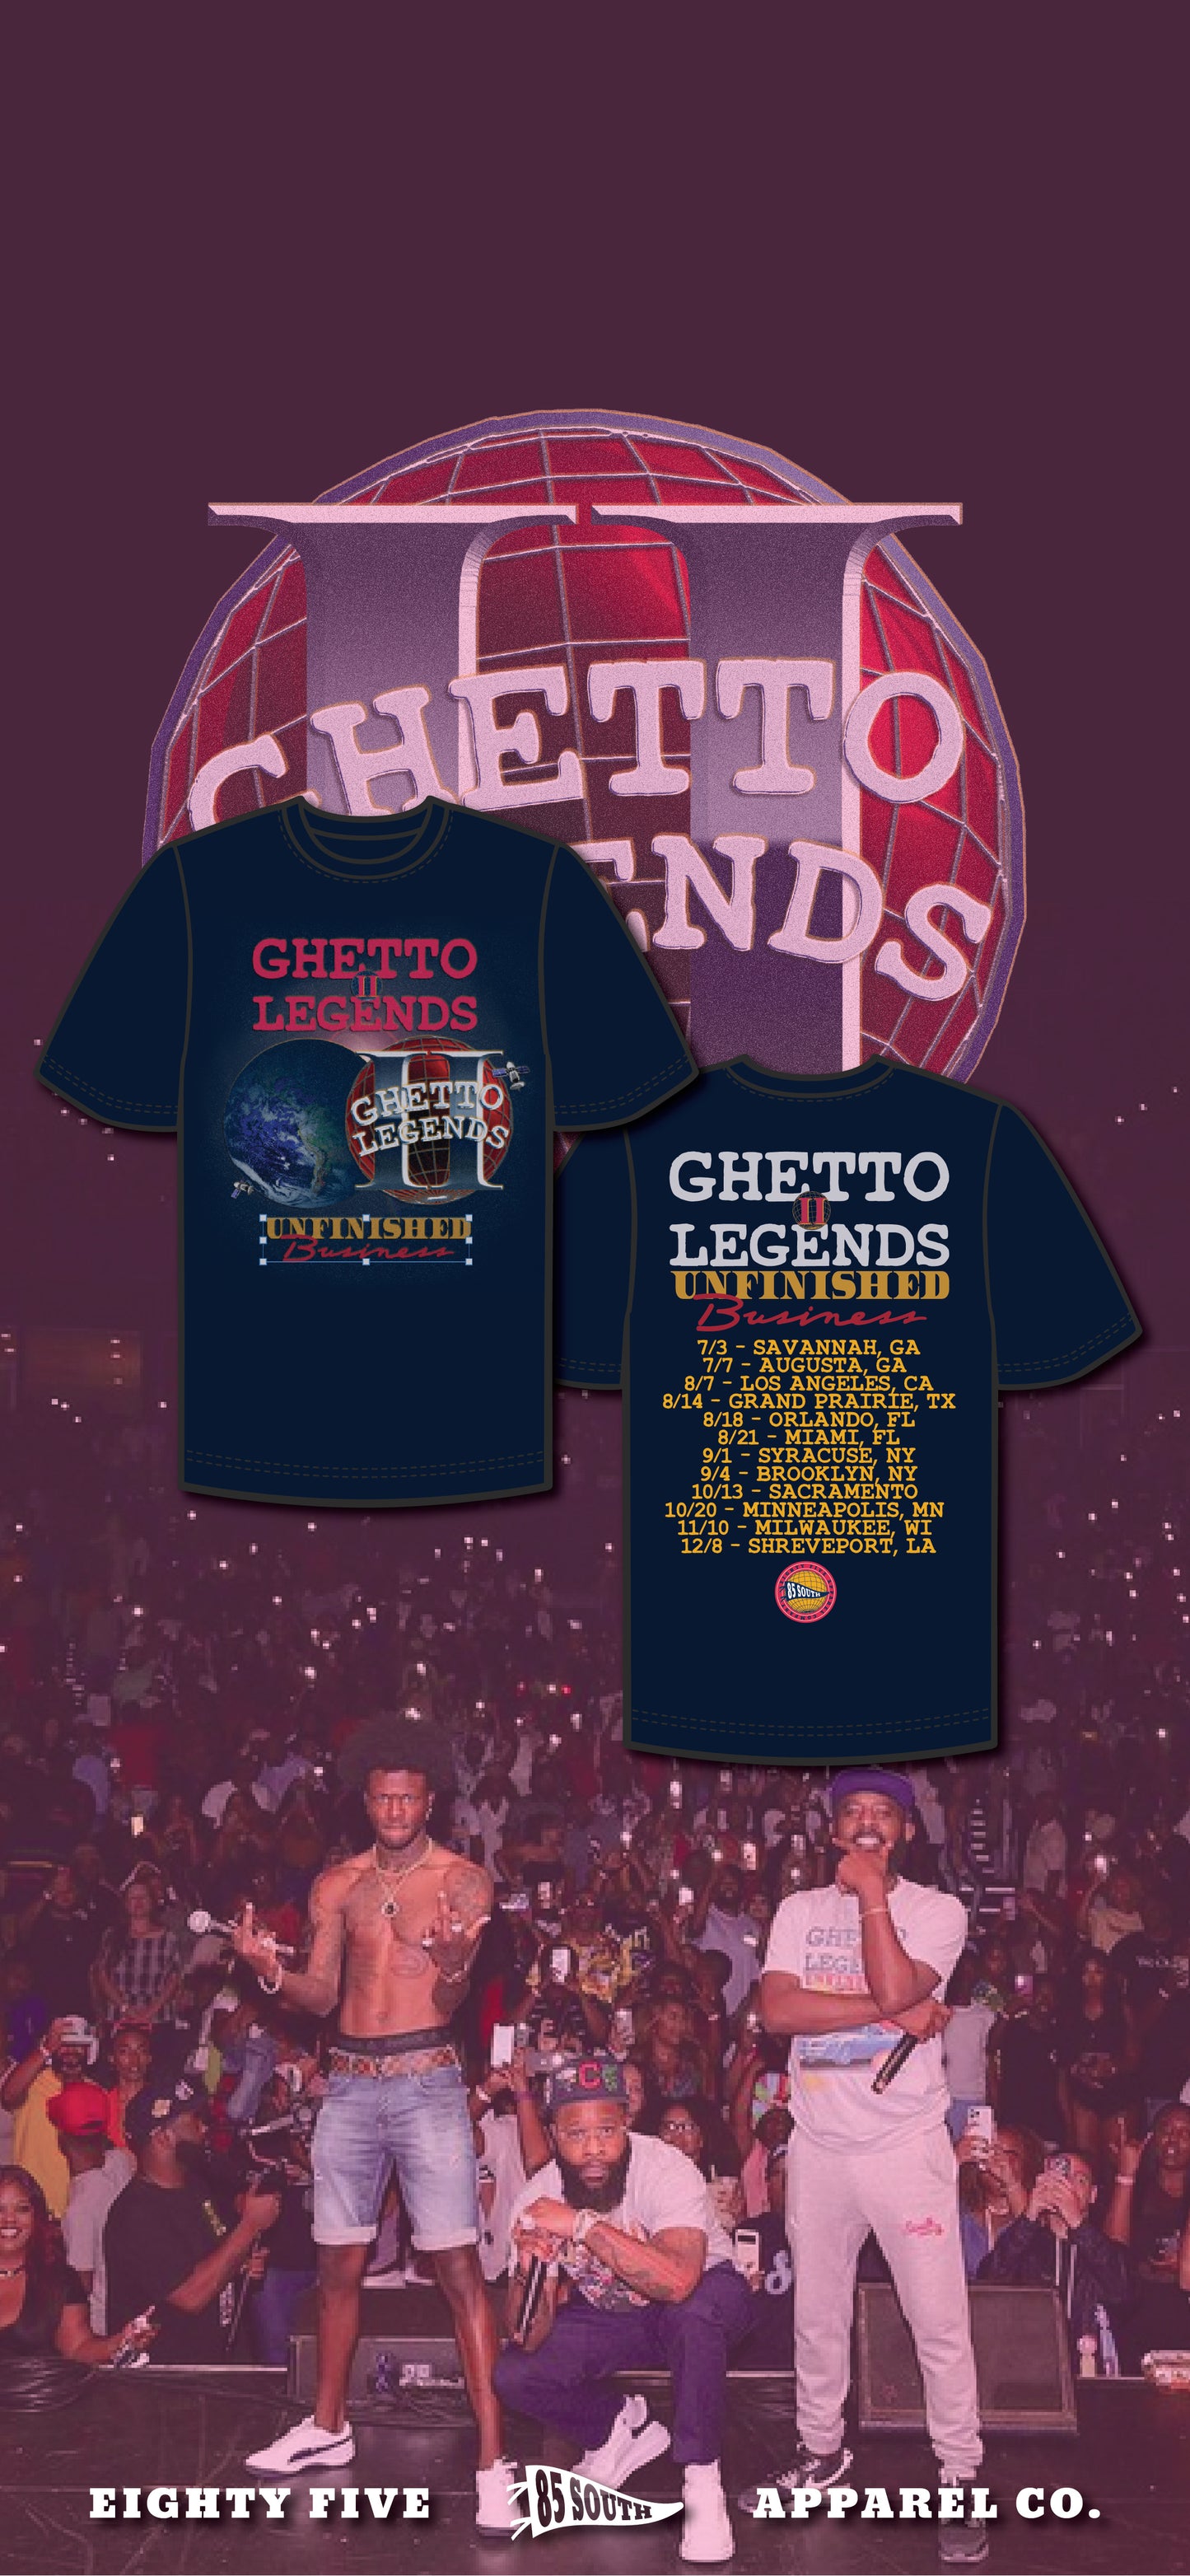 Ghetto Legend II Eclipse Tour Tee